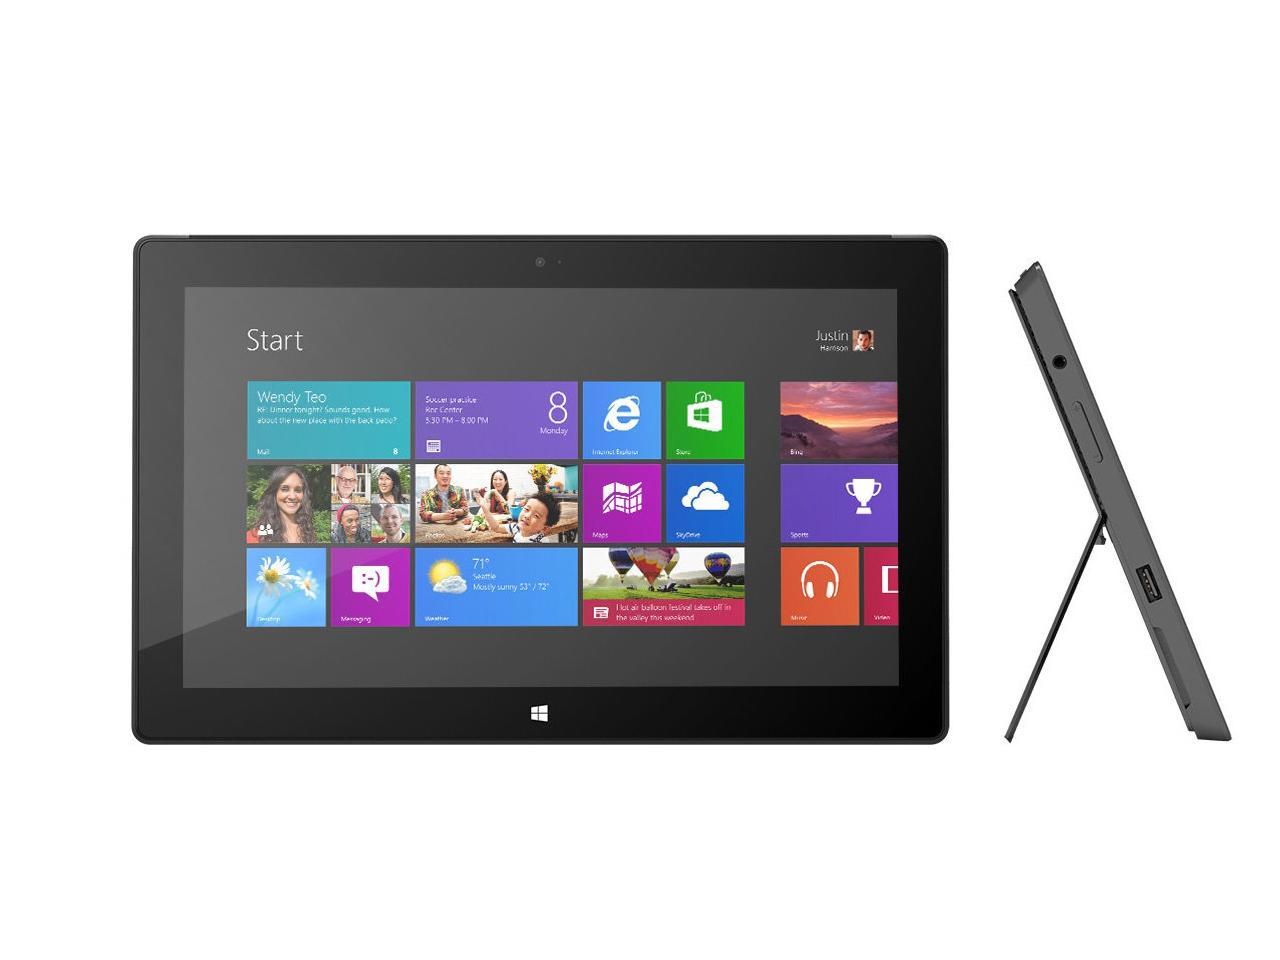 Microsoft Surface Pro 2 (1601) - 10.6